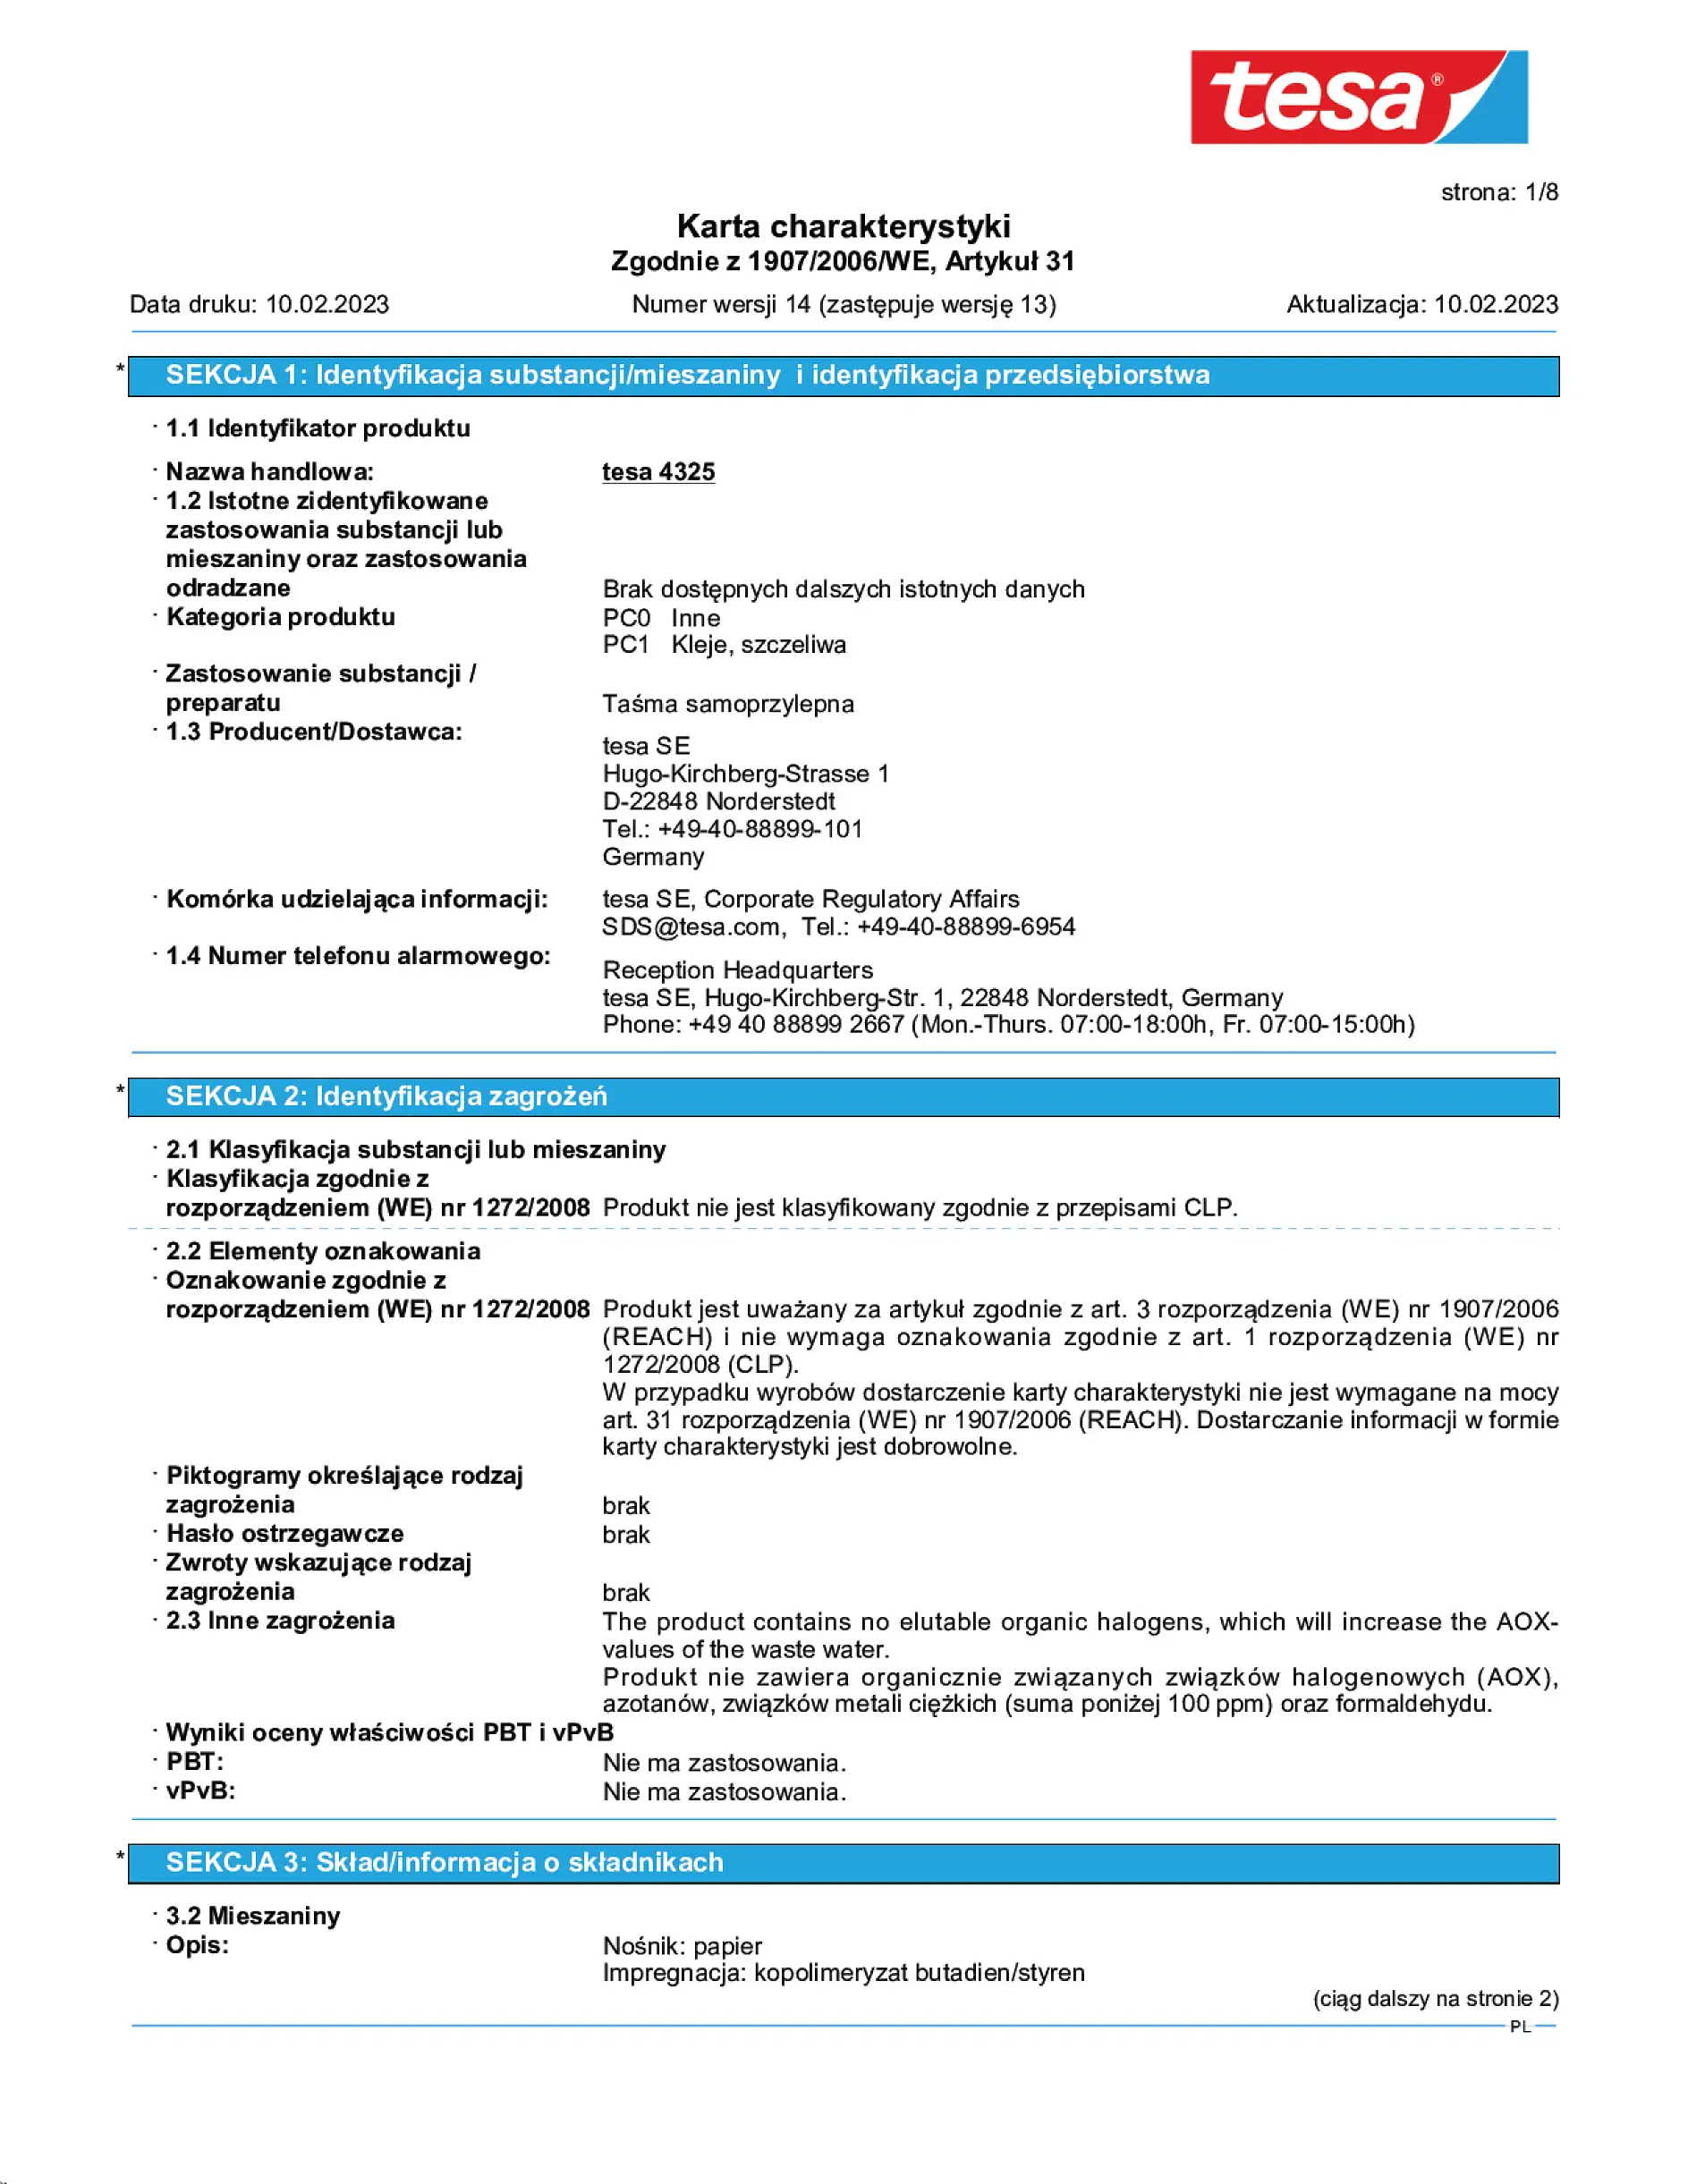 Safety data sheet_tesa® Professional 04325_pl-PL_v14